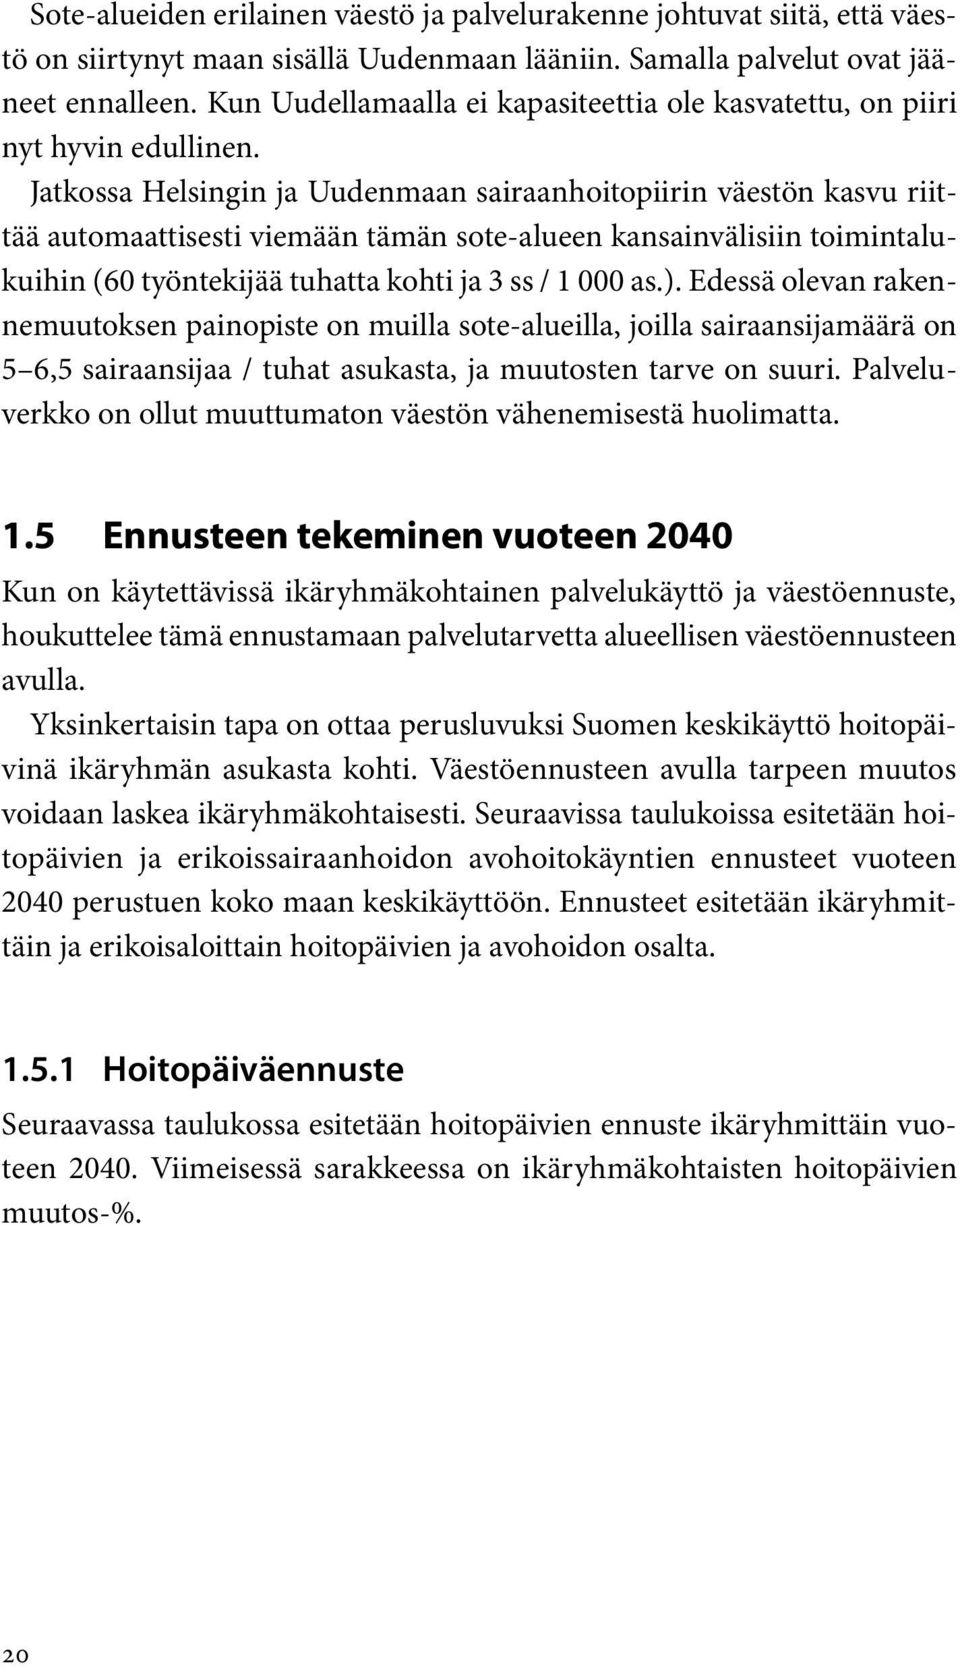 Jatkossa Helsingin ja Uudenmaan sairaanhoitopiirin väestön kasvu riittää automaattisesti viemään tämän sote-alueen kansainvälisiin toimintalukuihin (60 työntekijää tuhatta kohti ja 3 ss / 1 000 as.).